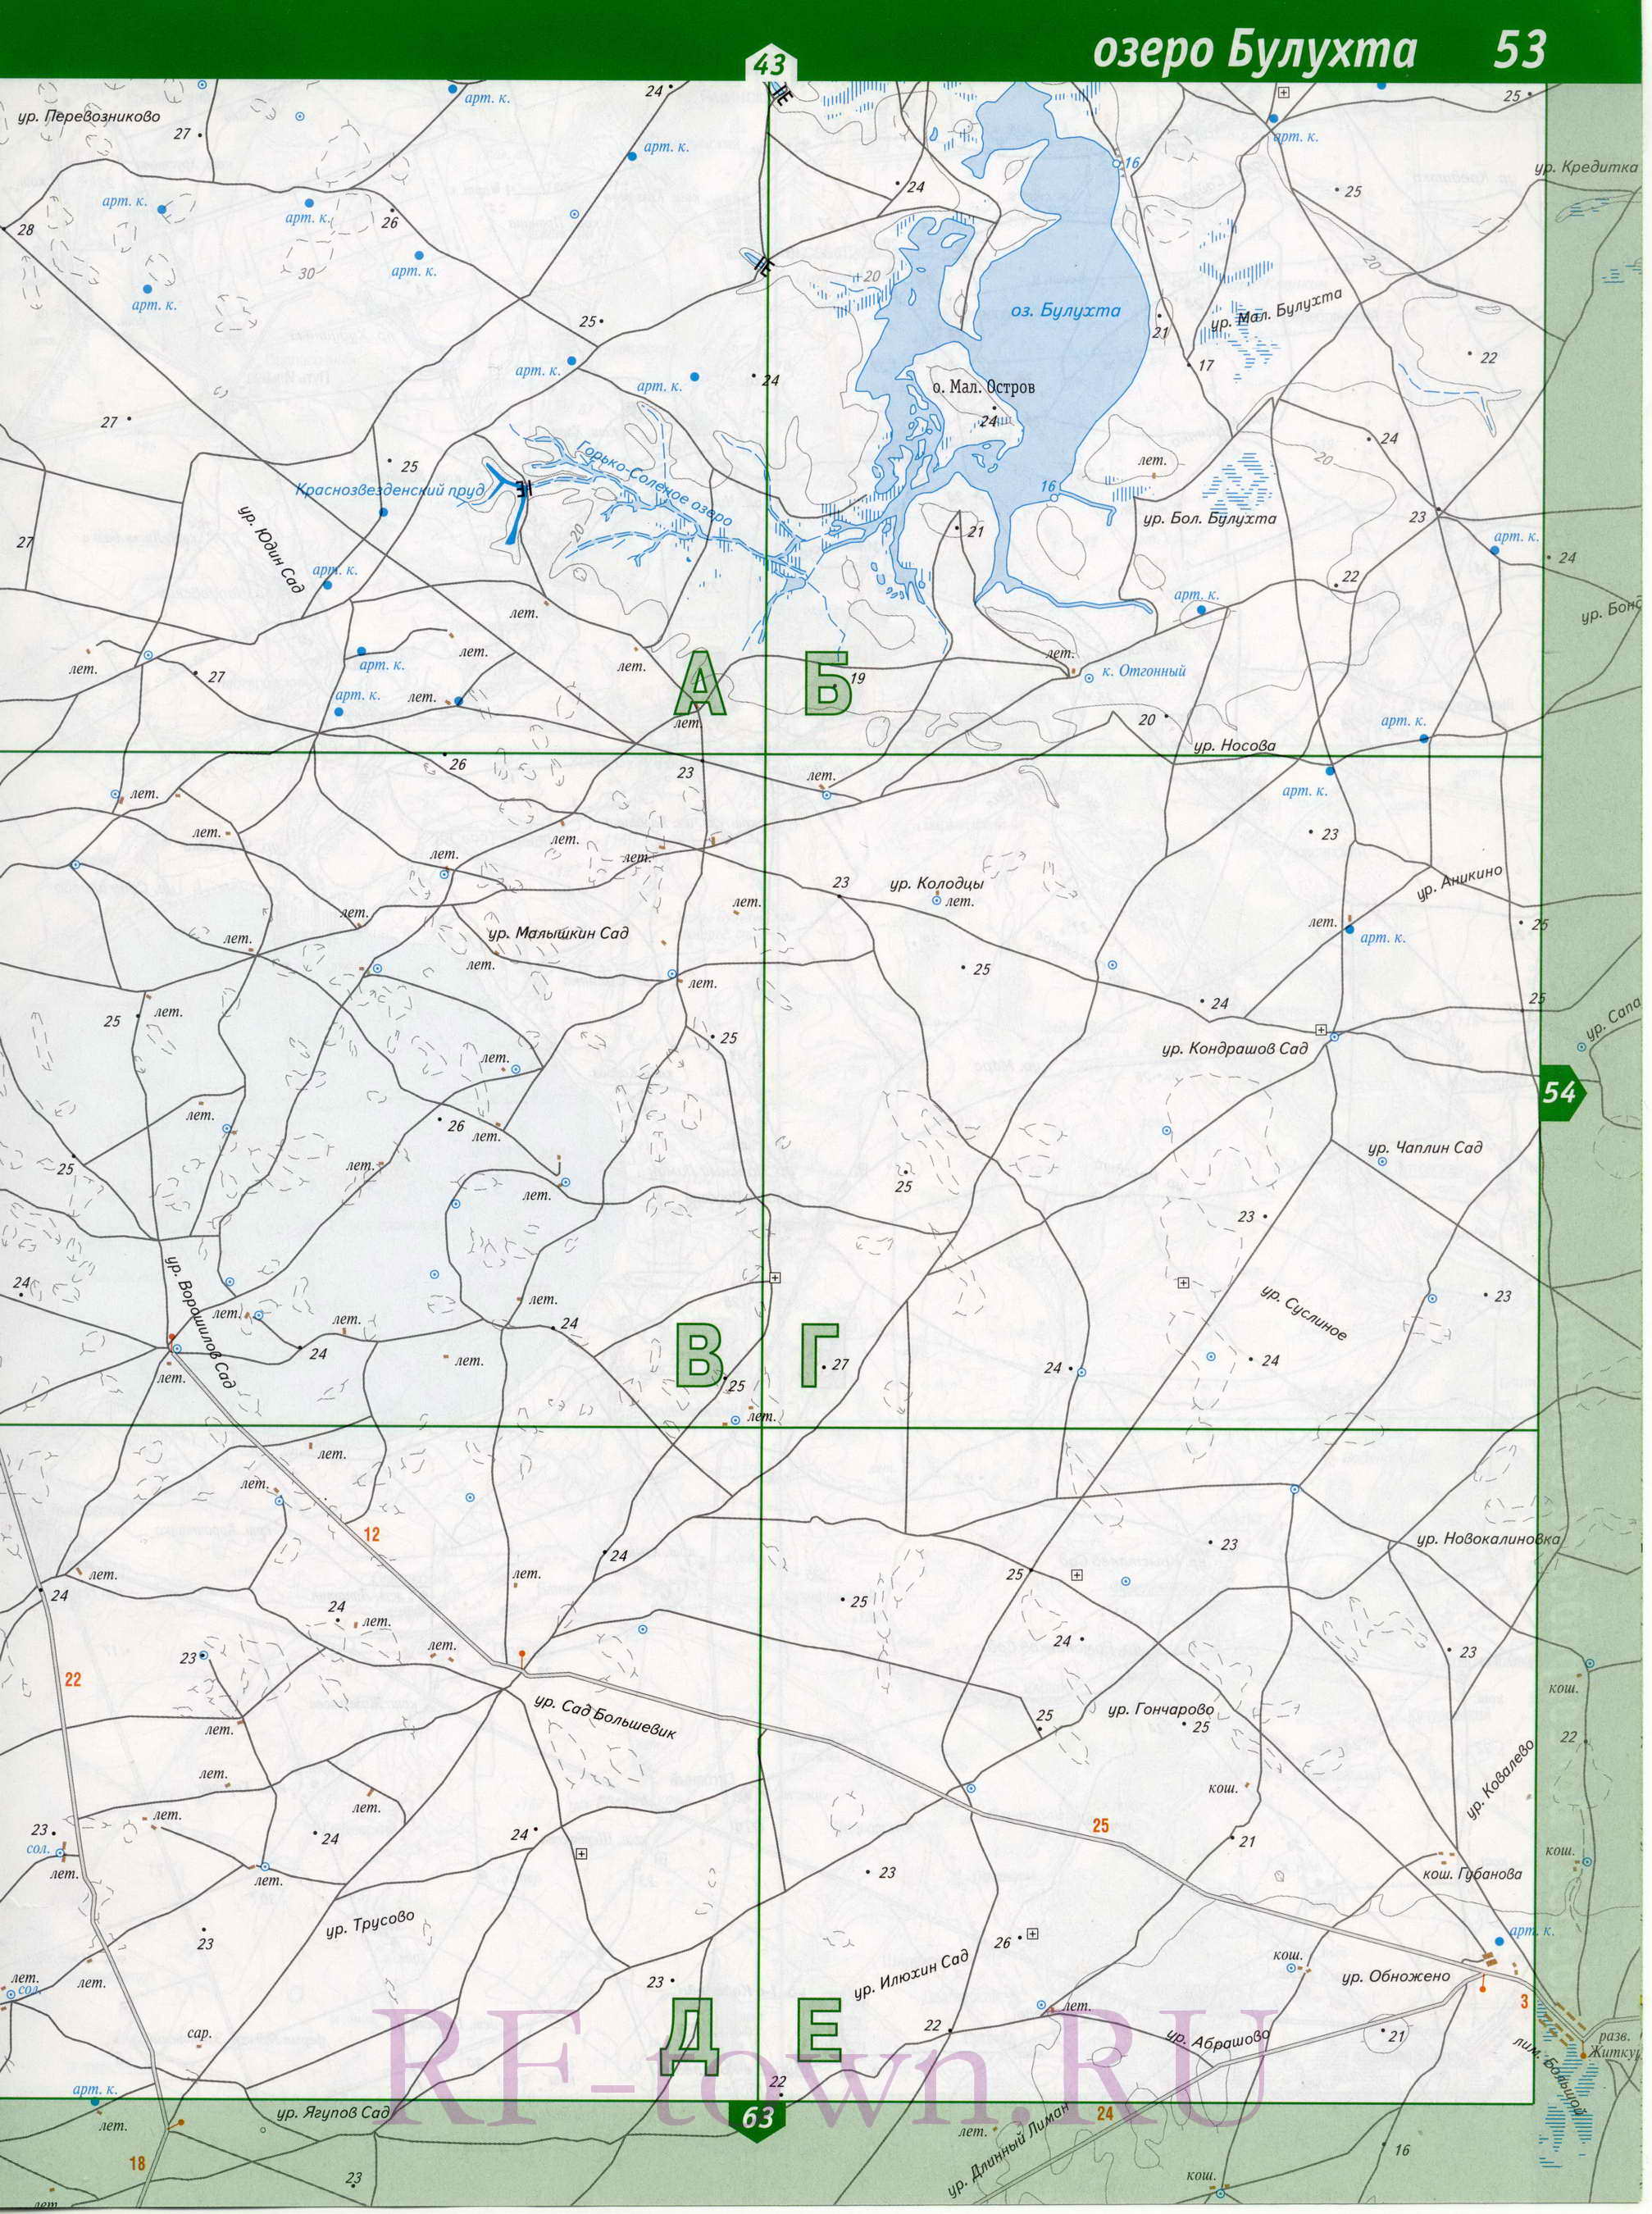 Карта закрытого территориального образования Знаменск, A1 - 